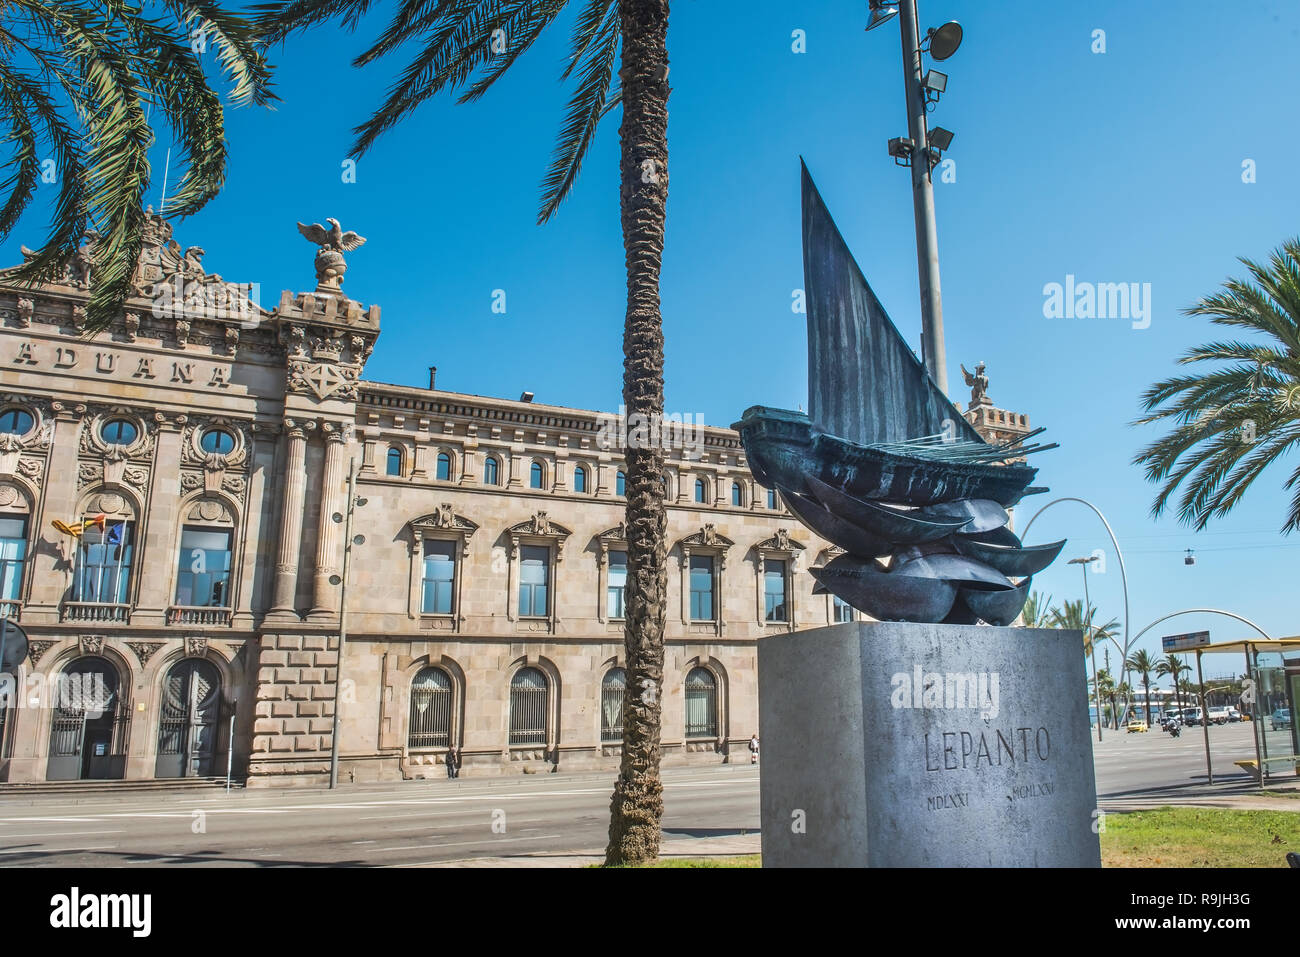 Edificio viejo de la aduana con una estatua ​navy dedica a la batalla de Lepanto, Barcelona, España. Foto de stock